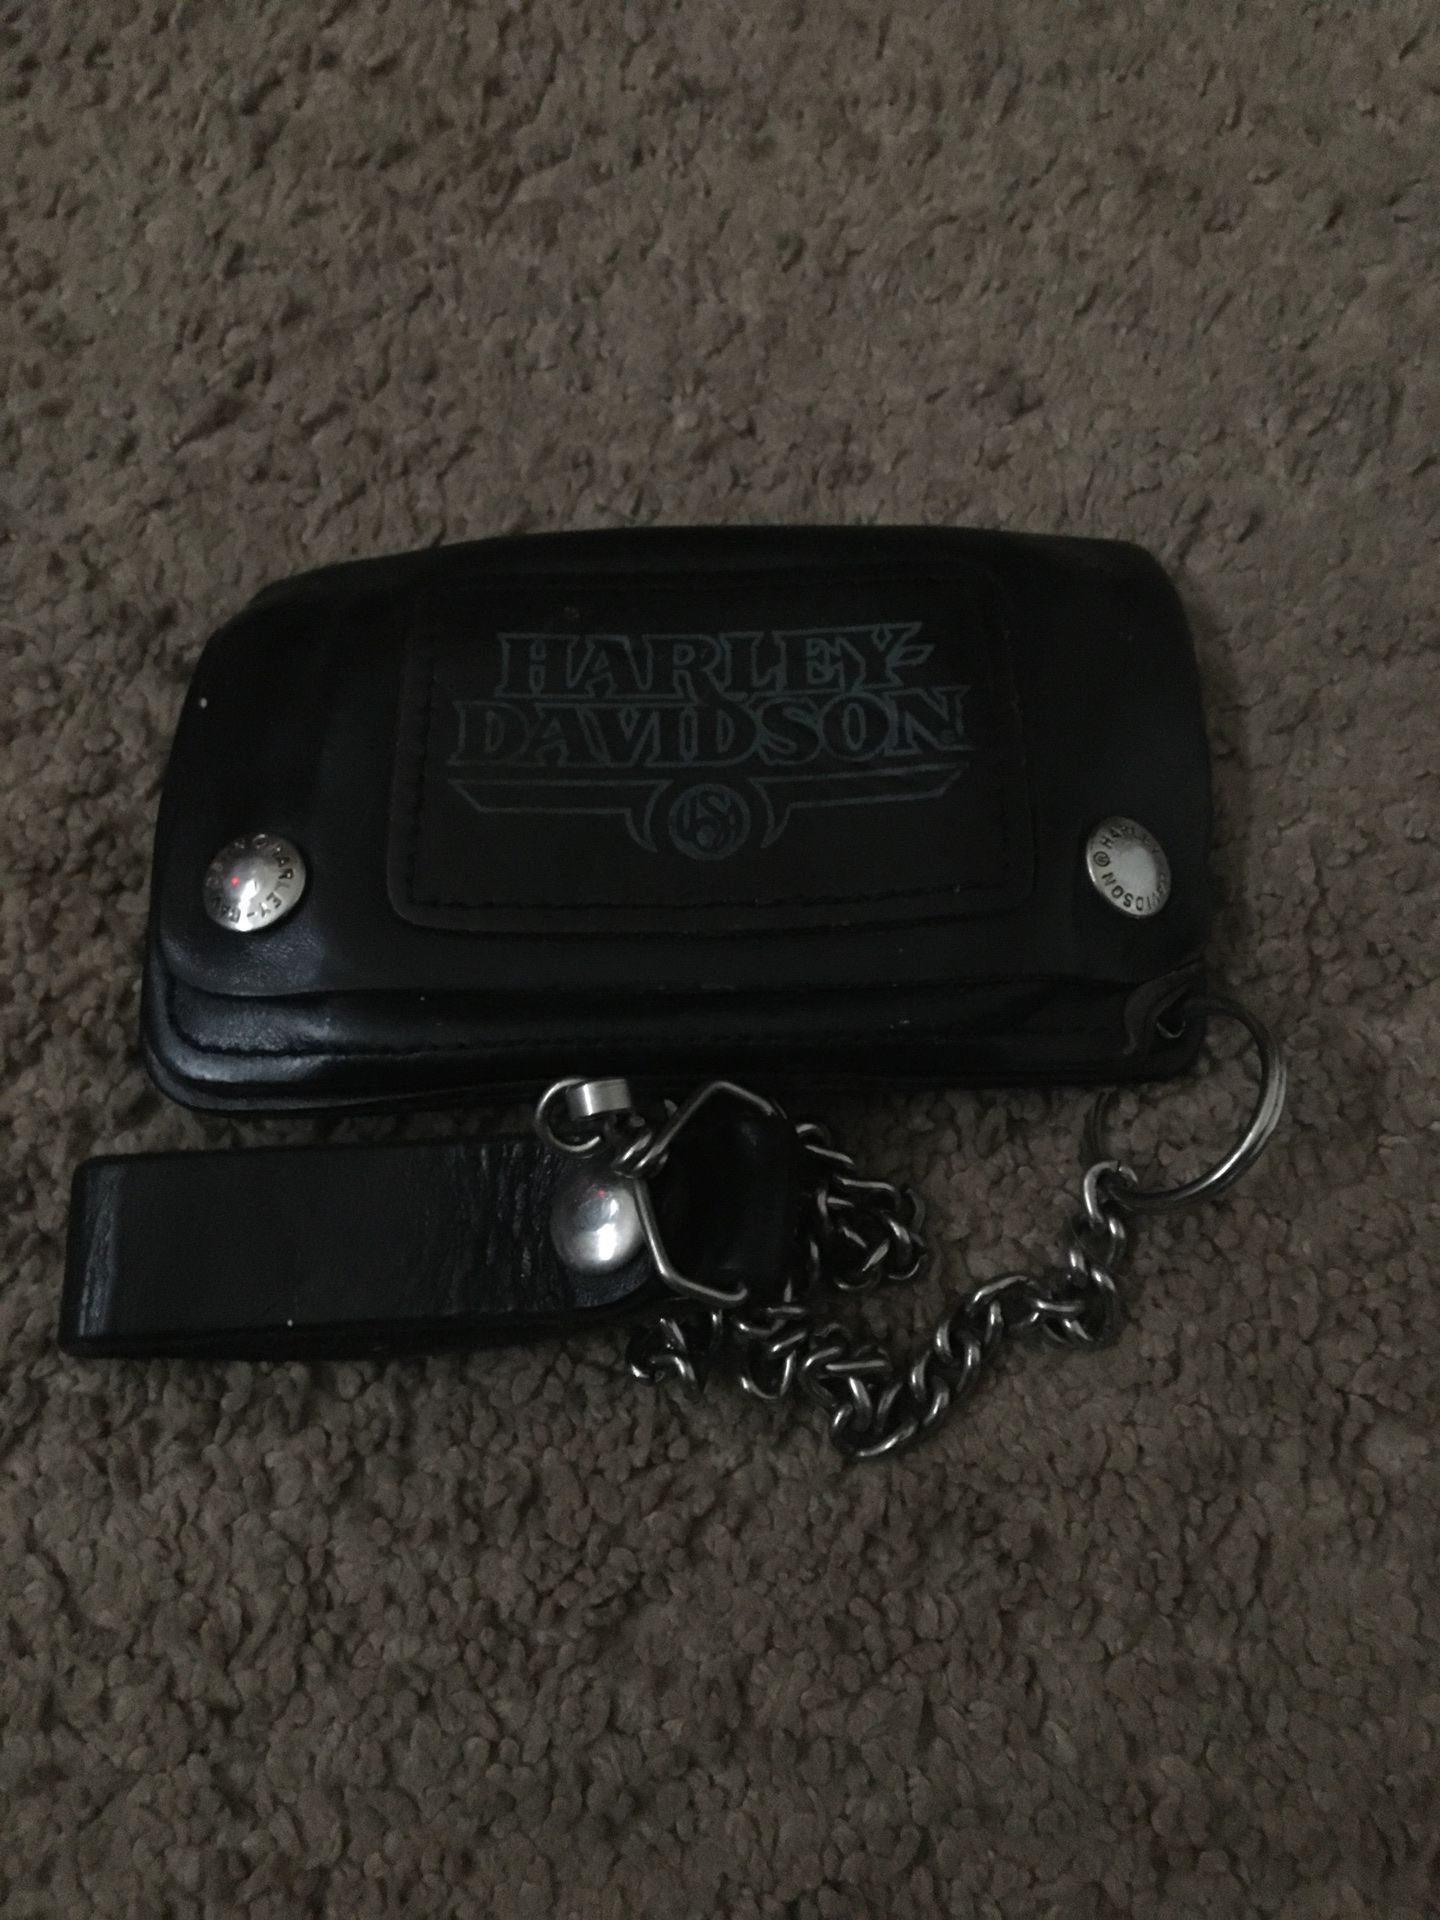 Harley Davidson wallet